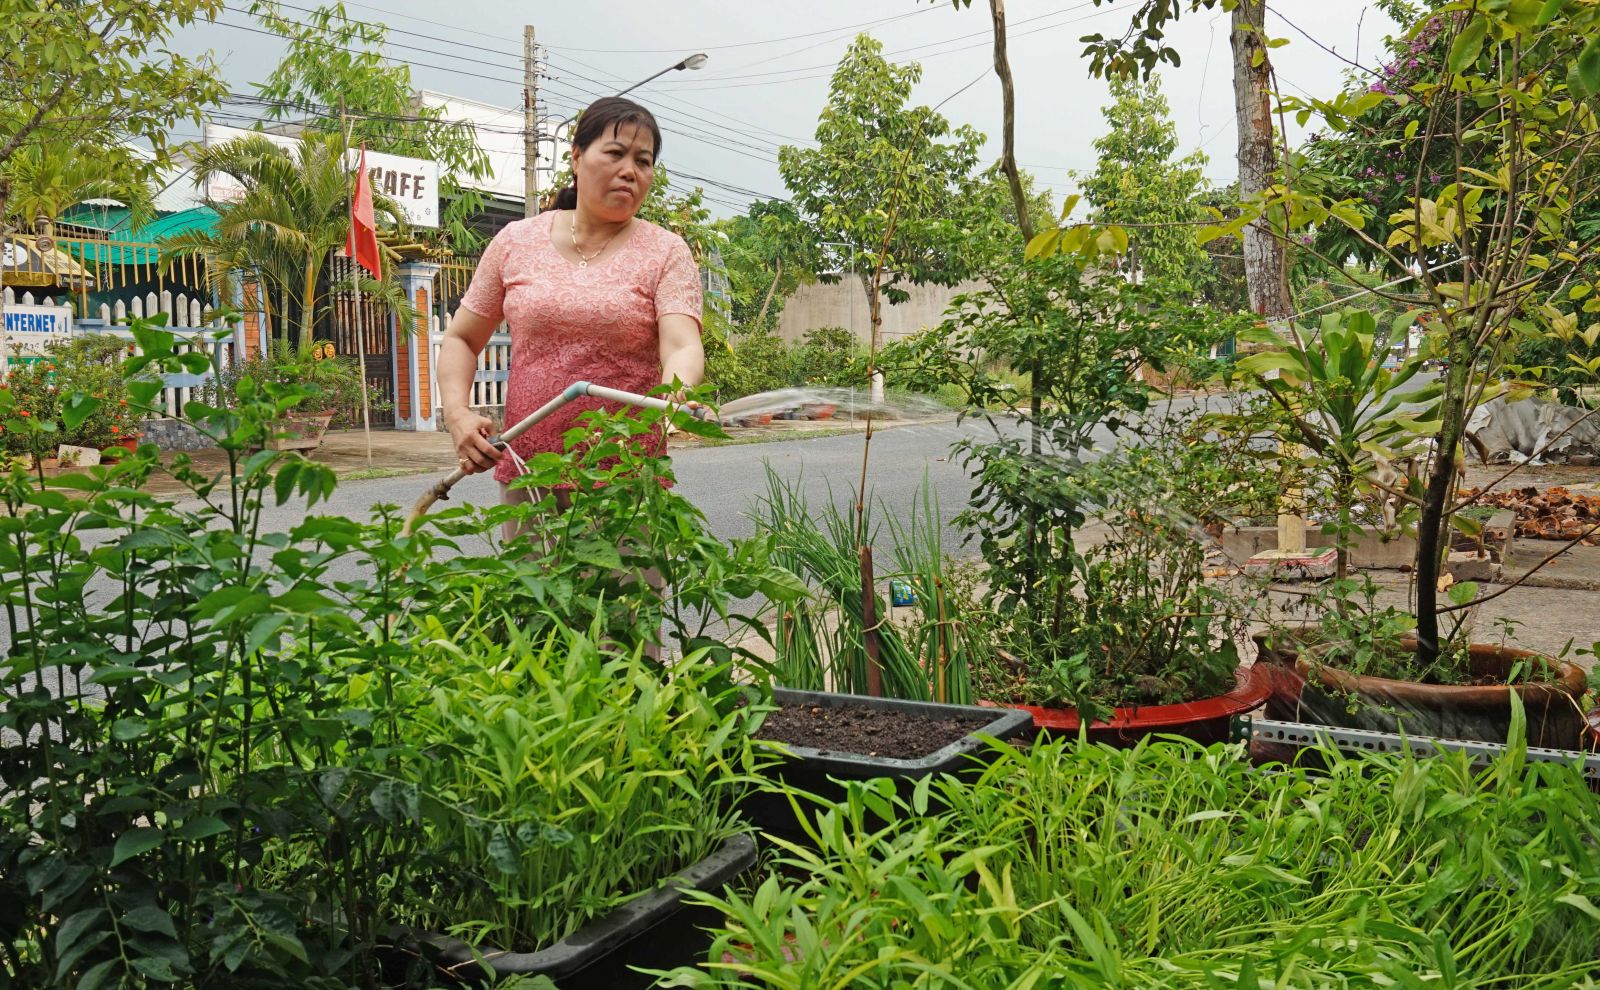 Cùng với việc thu gom, xử lý rác thải đúng quy định, hội viên, phụ nữ thị trấn Tân Thạnh còn trồng rau, cây xanh để tạo cảnh quan môi trường xanh, sạch, đẹp